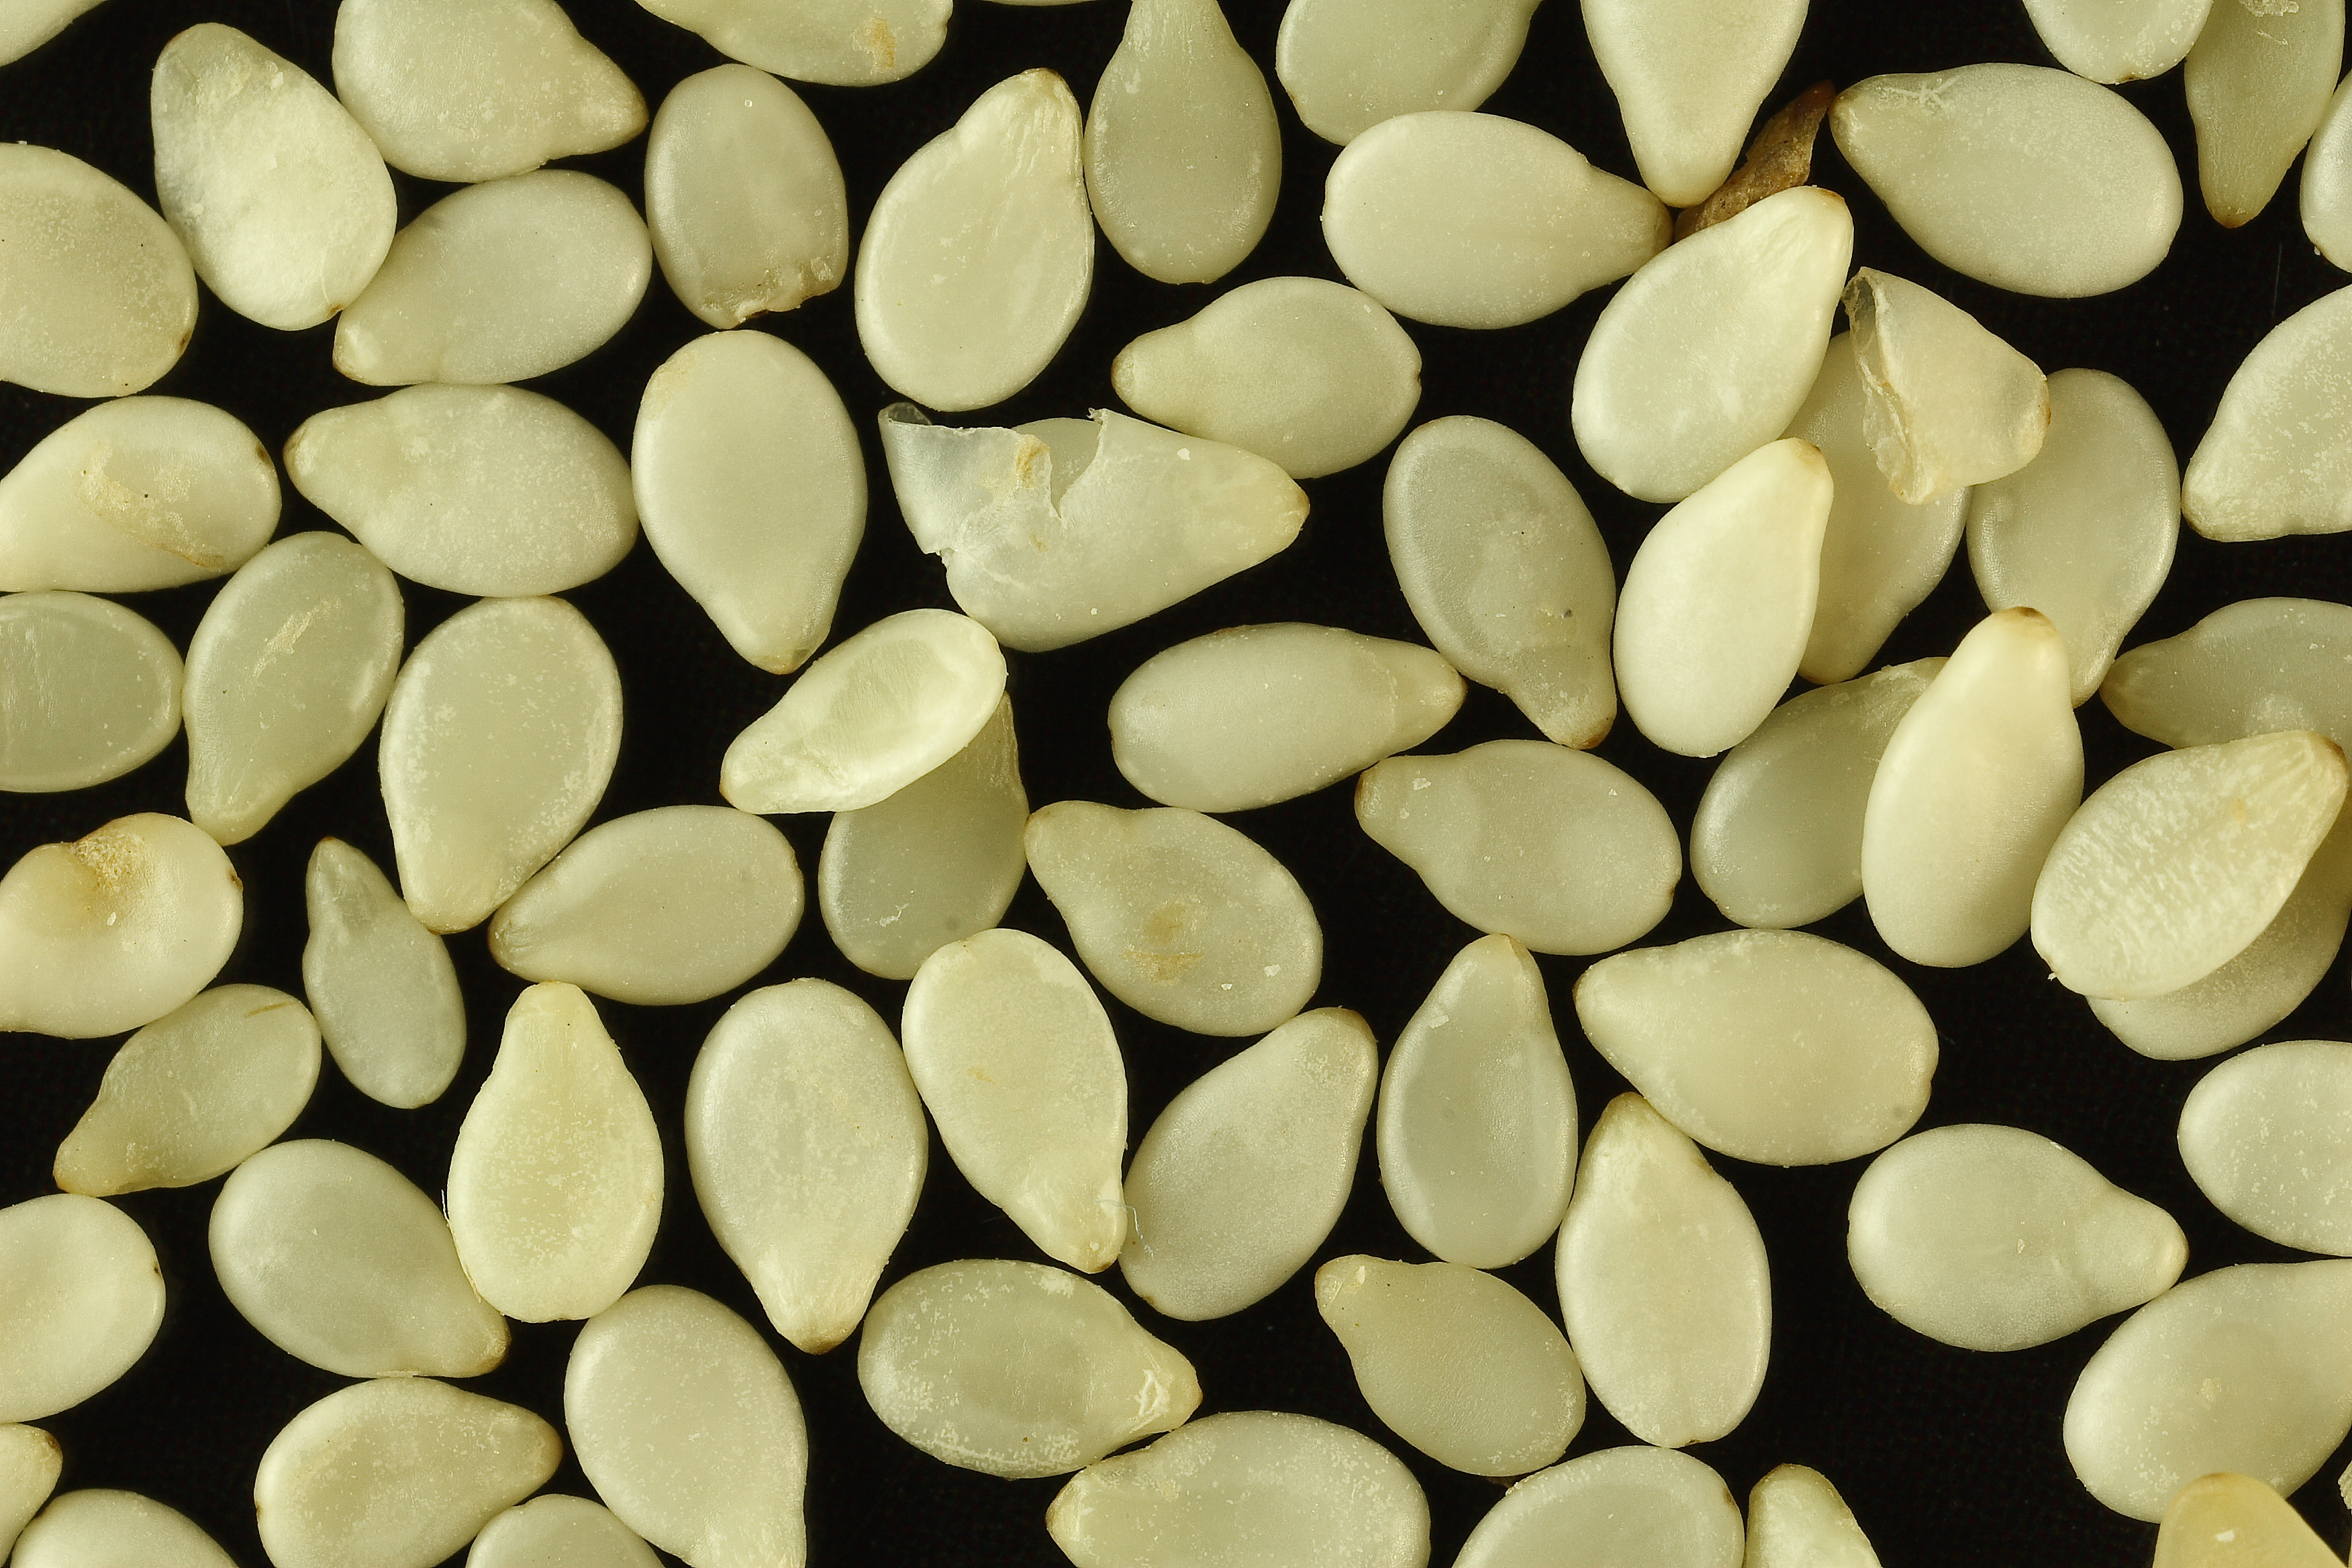 Sa white sesame seeds